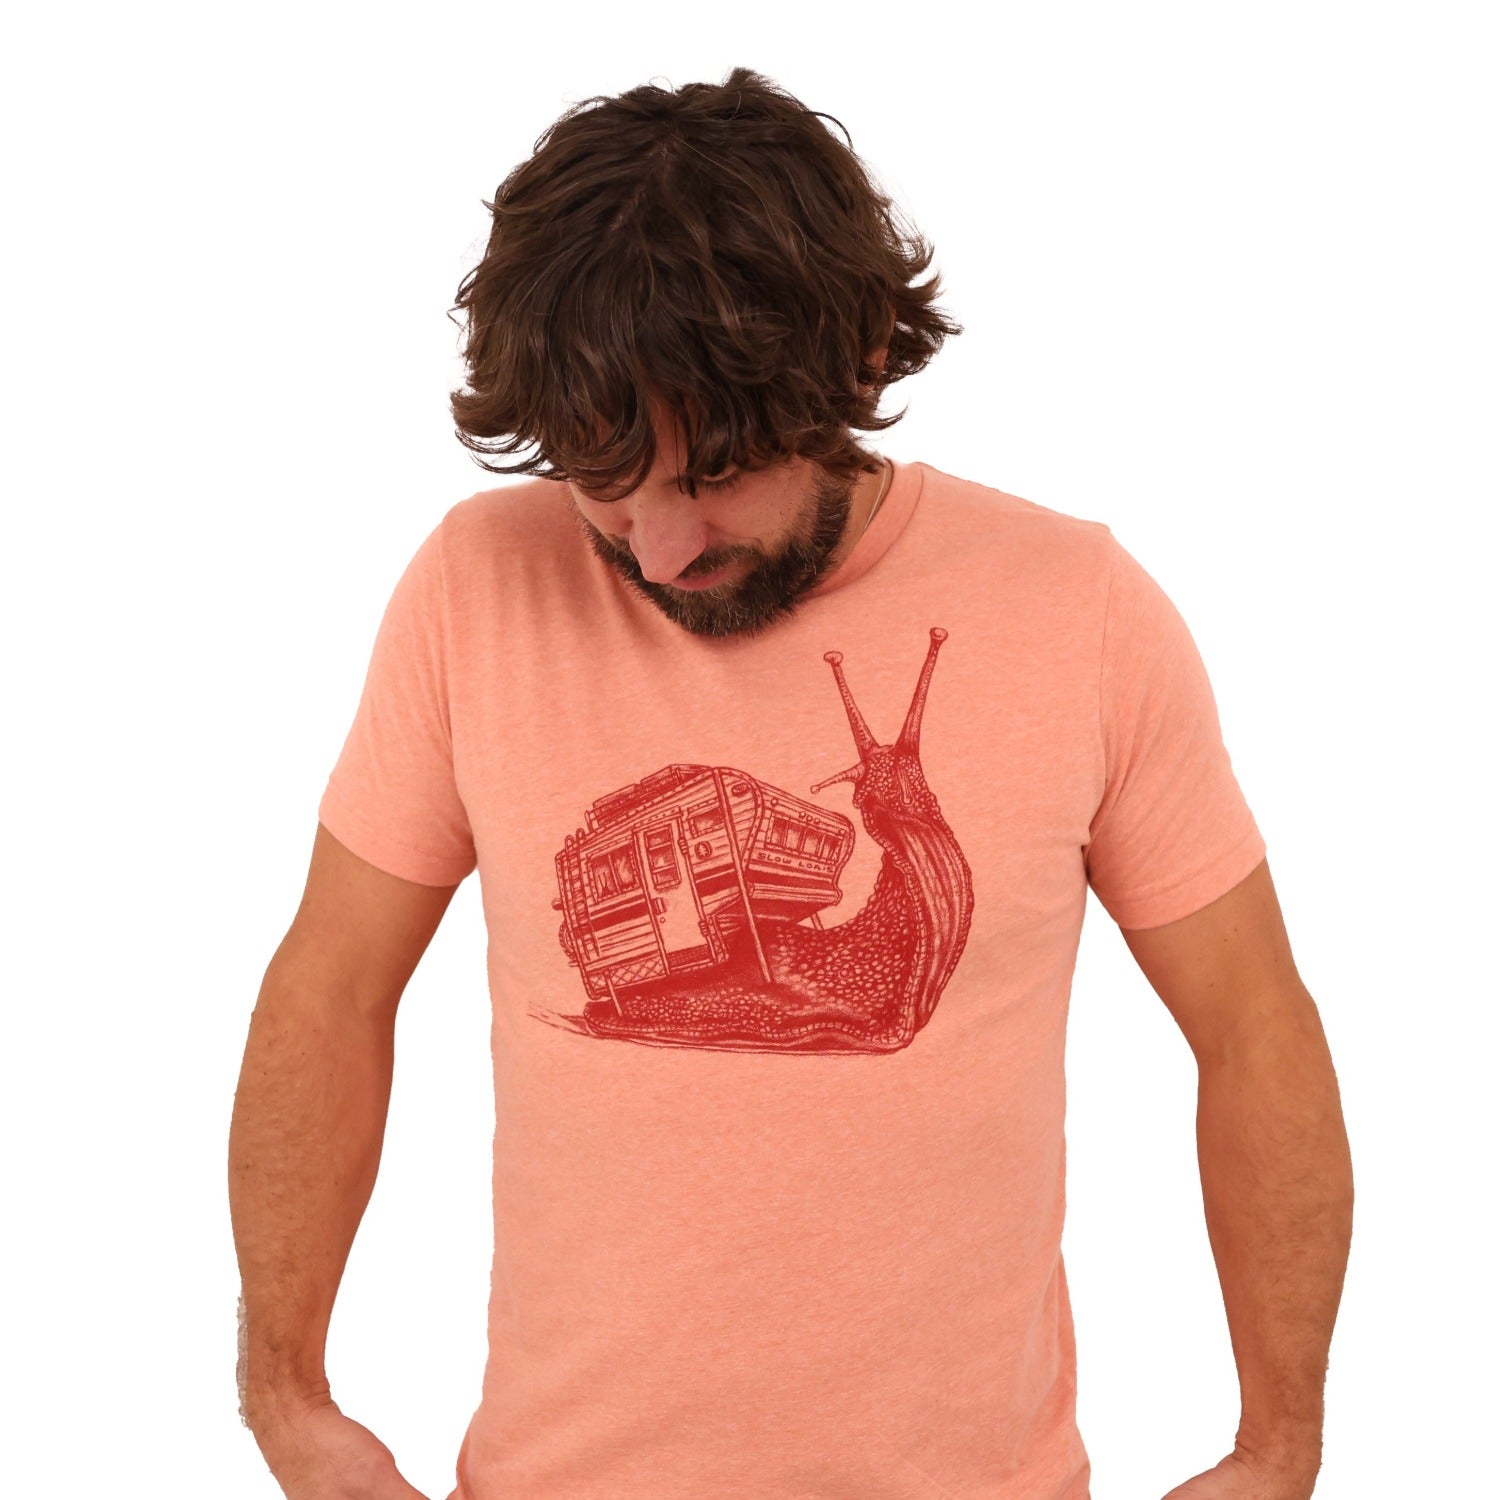 Snailer T Shirt